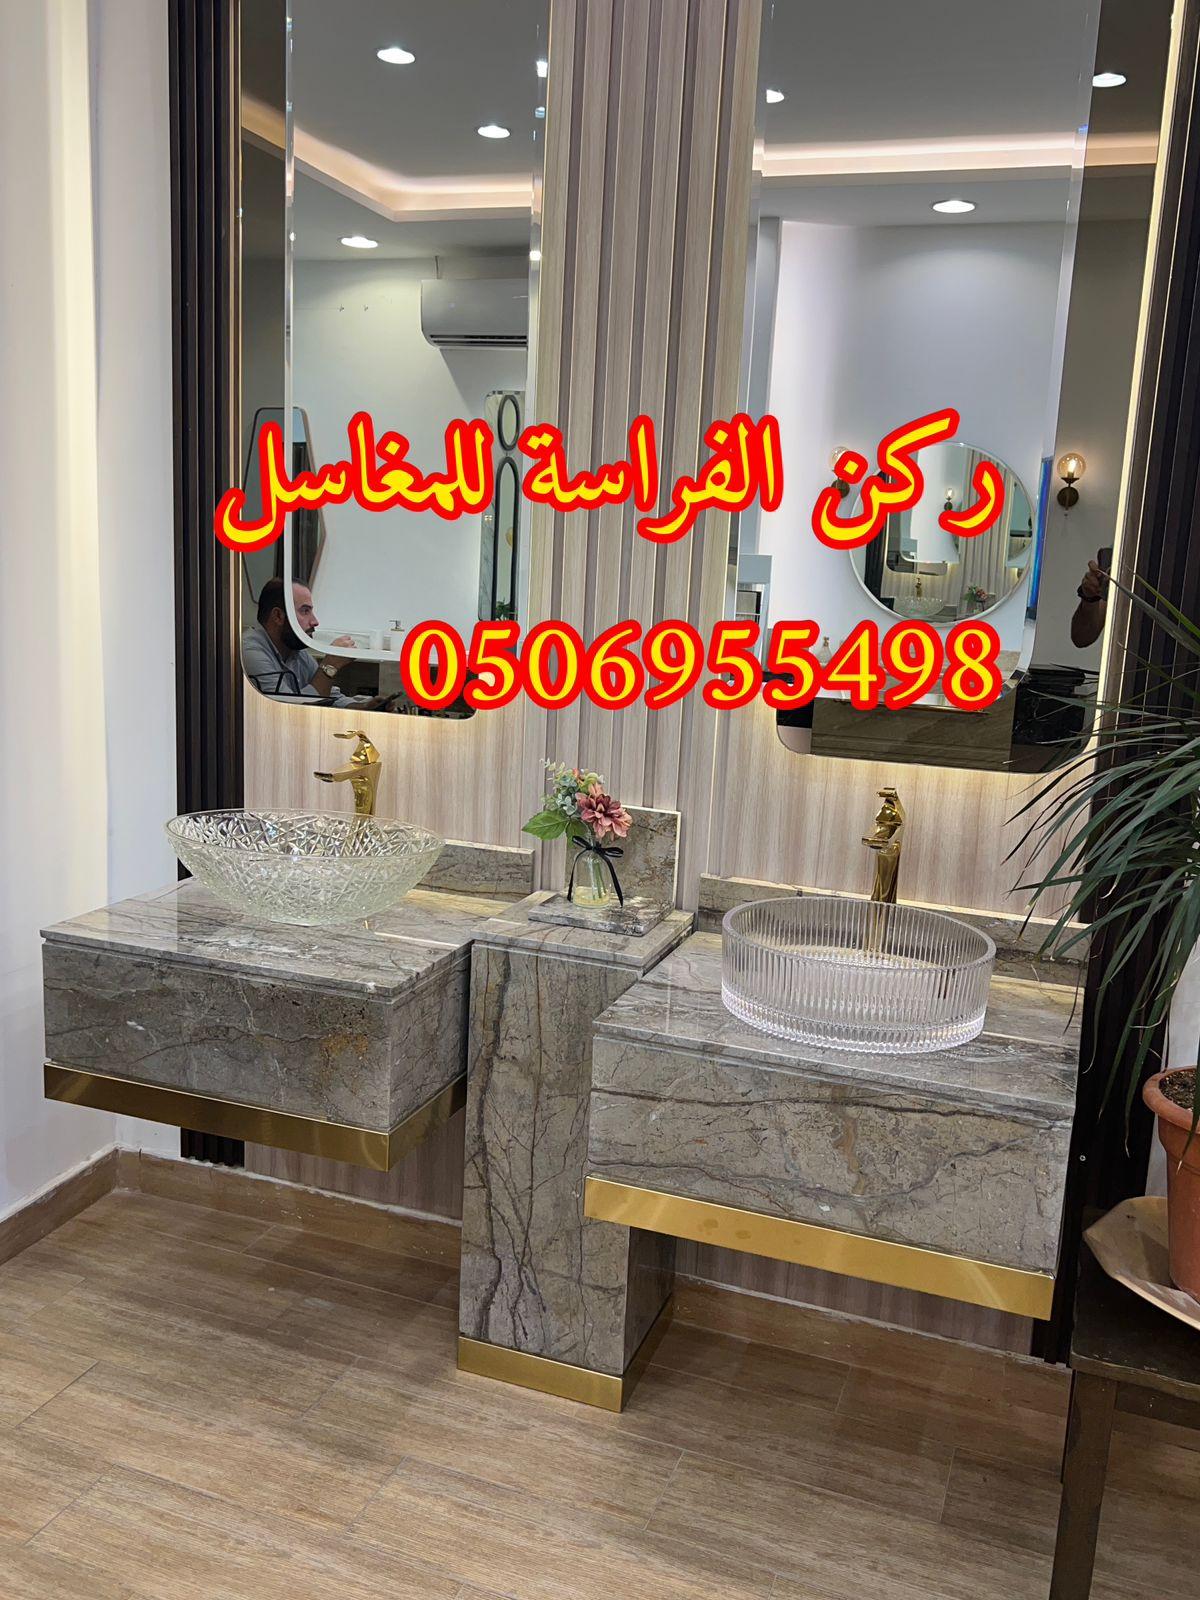 الرياض - تركيب مغاسل حمامات رخام في الرياض, 0506955498 460155978